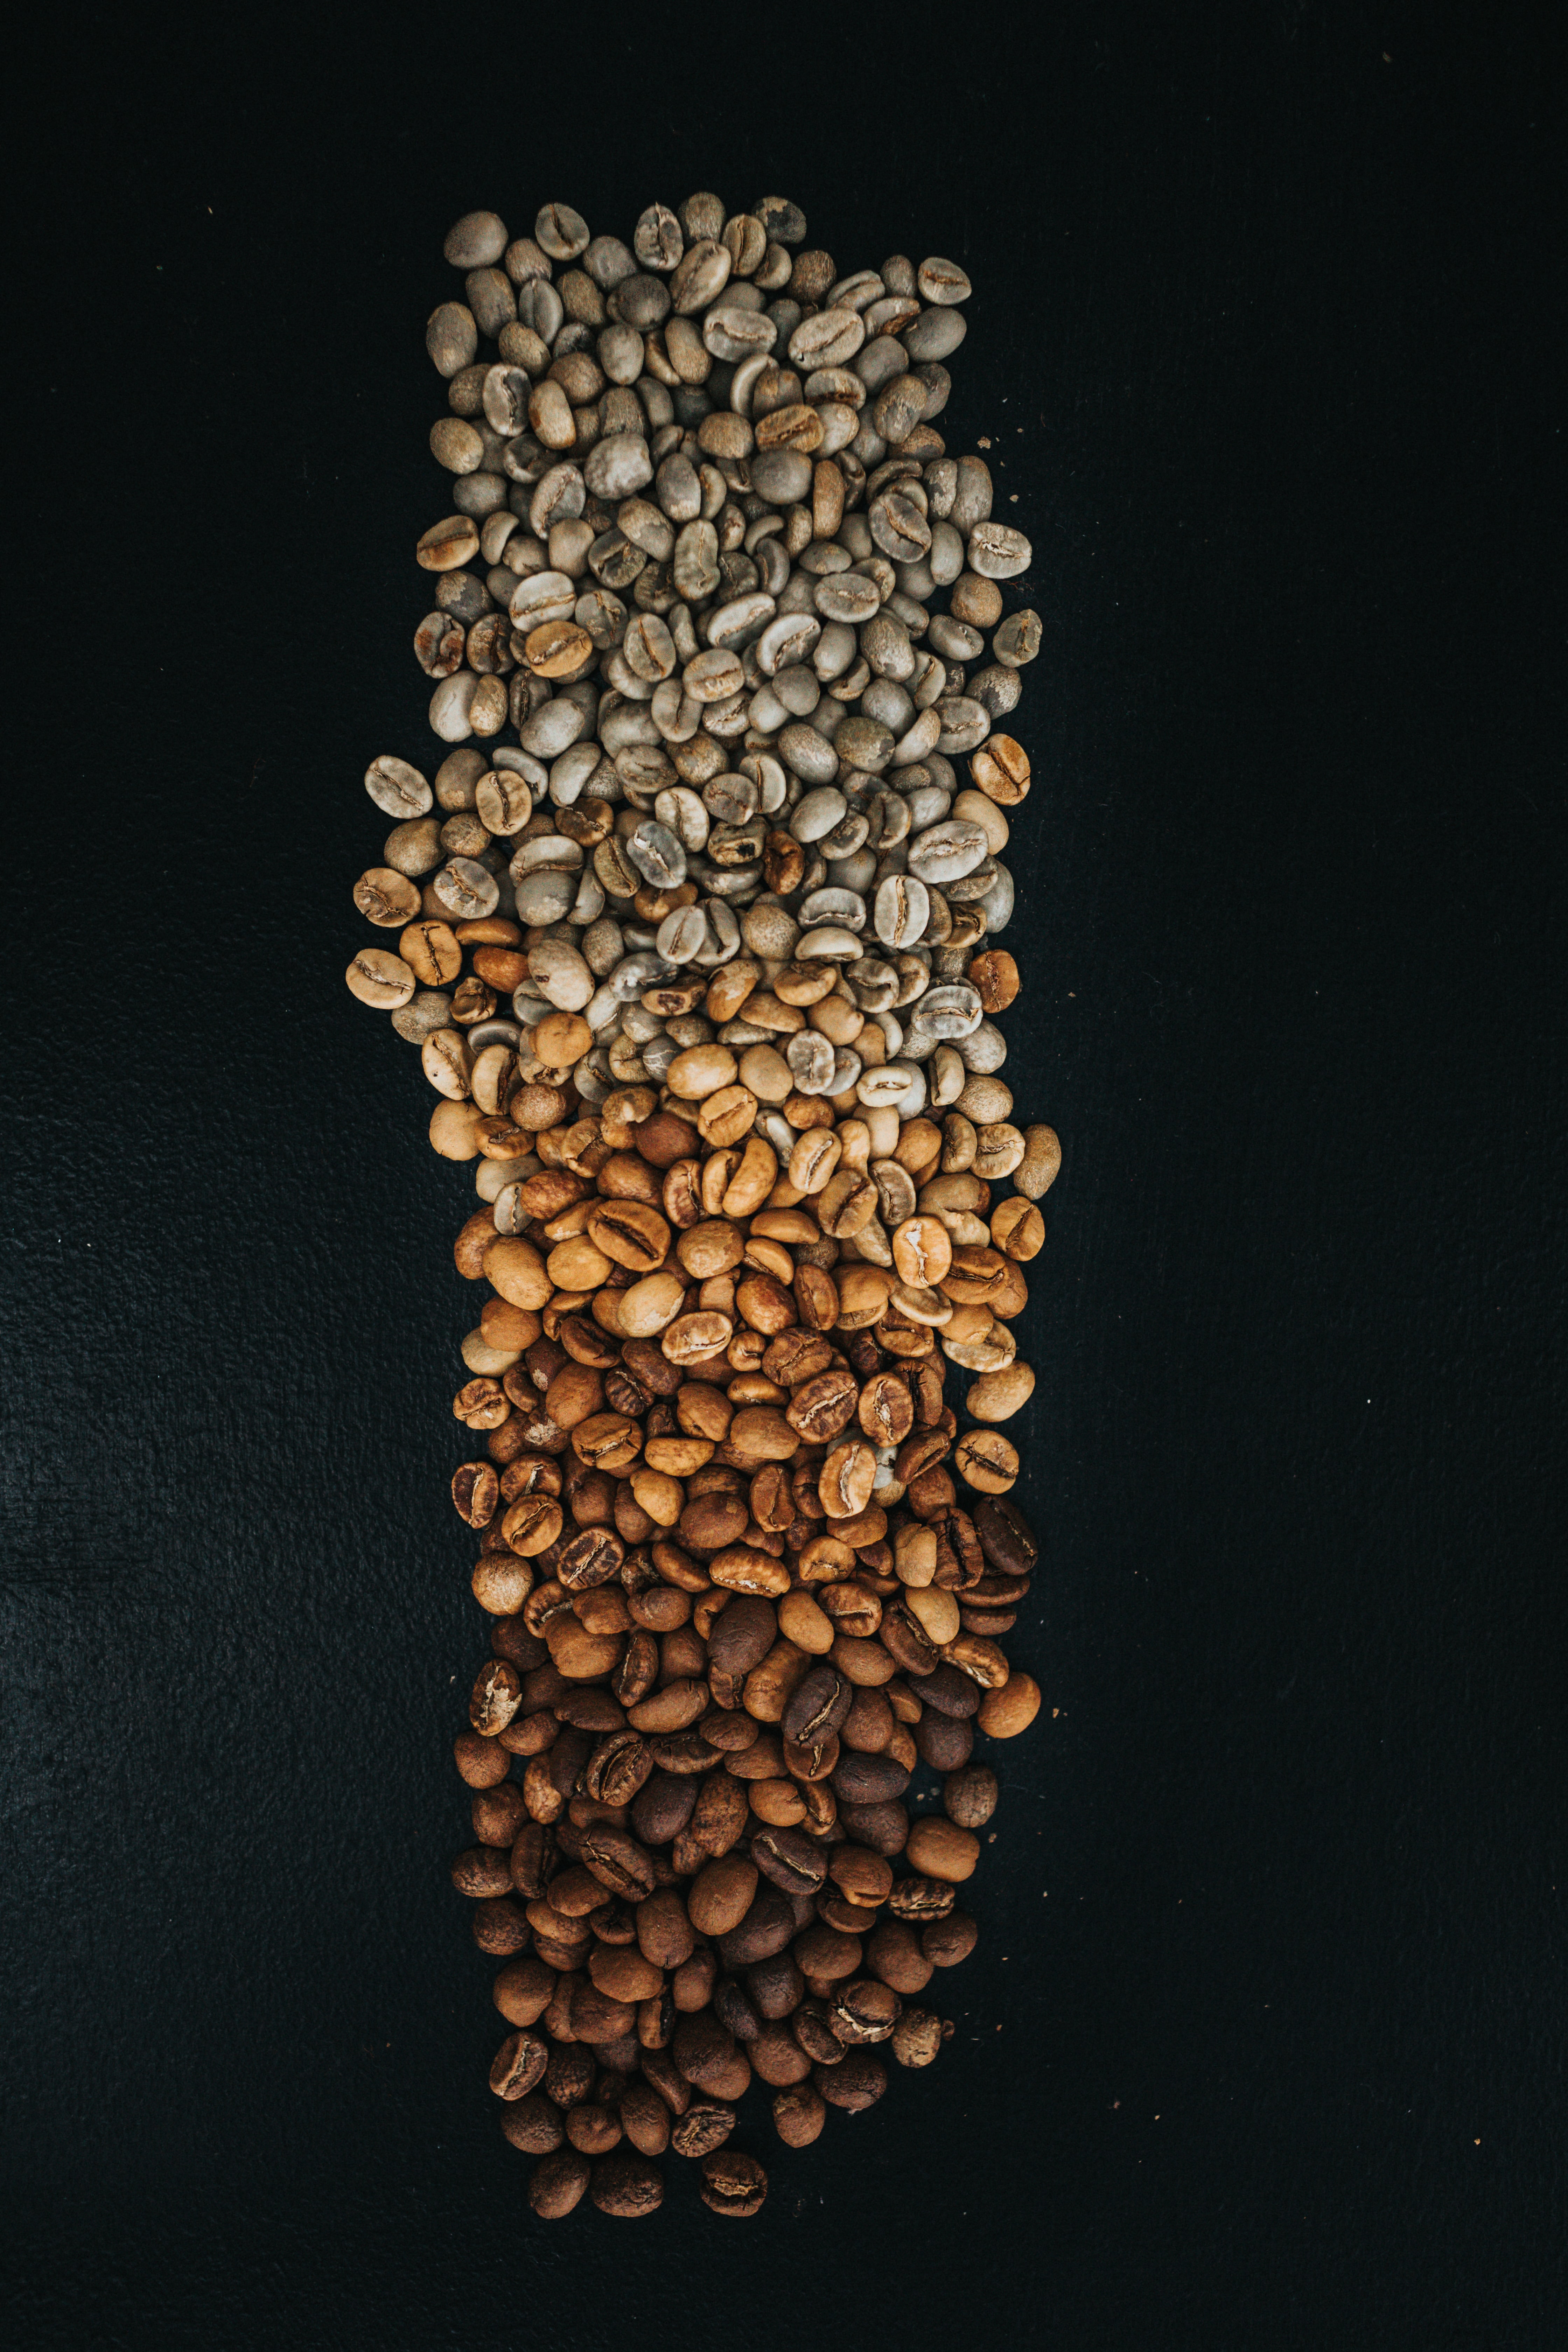 food, coffee, brown, gradient, grains, coffee beans, grain